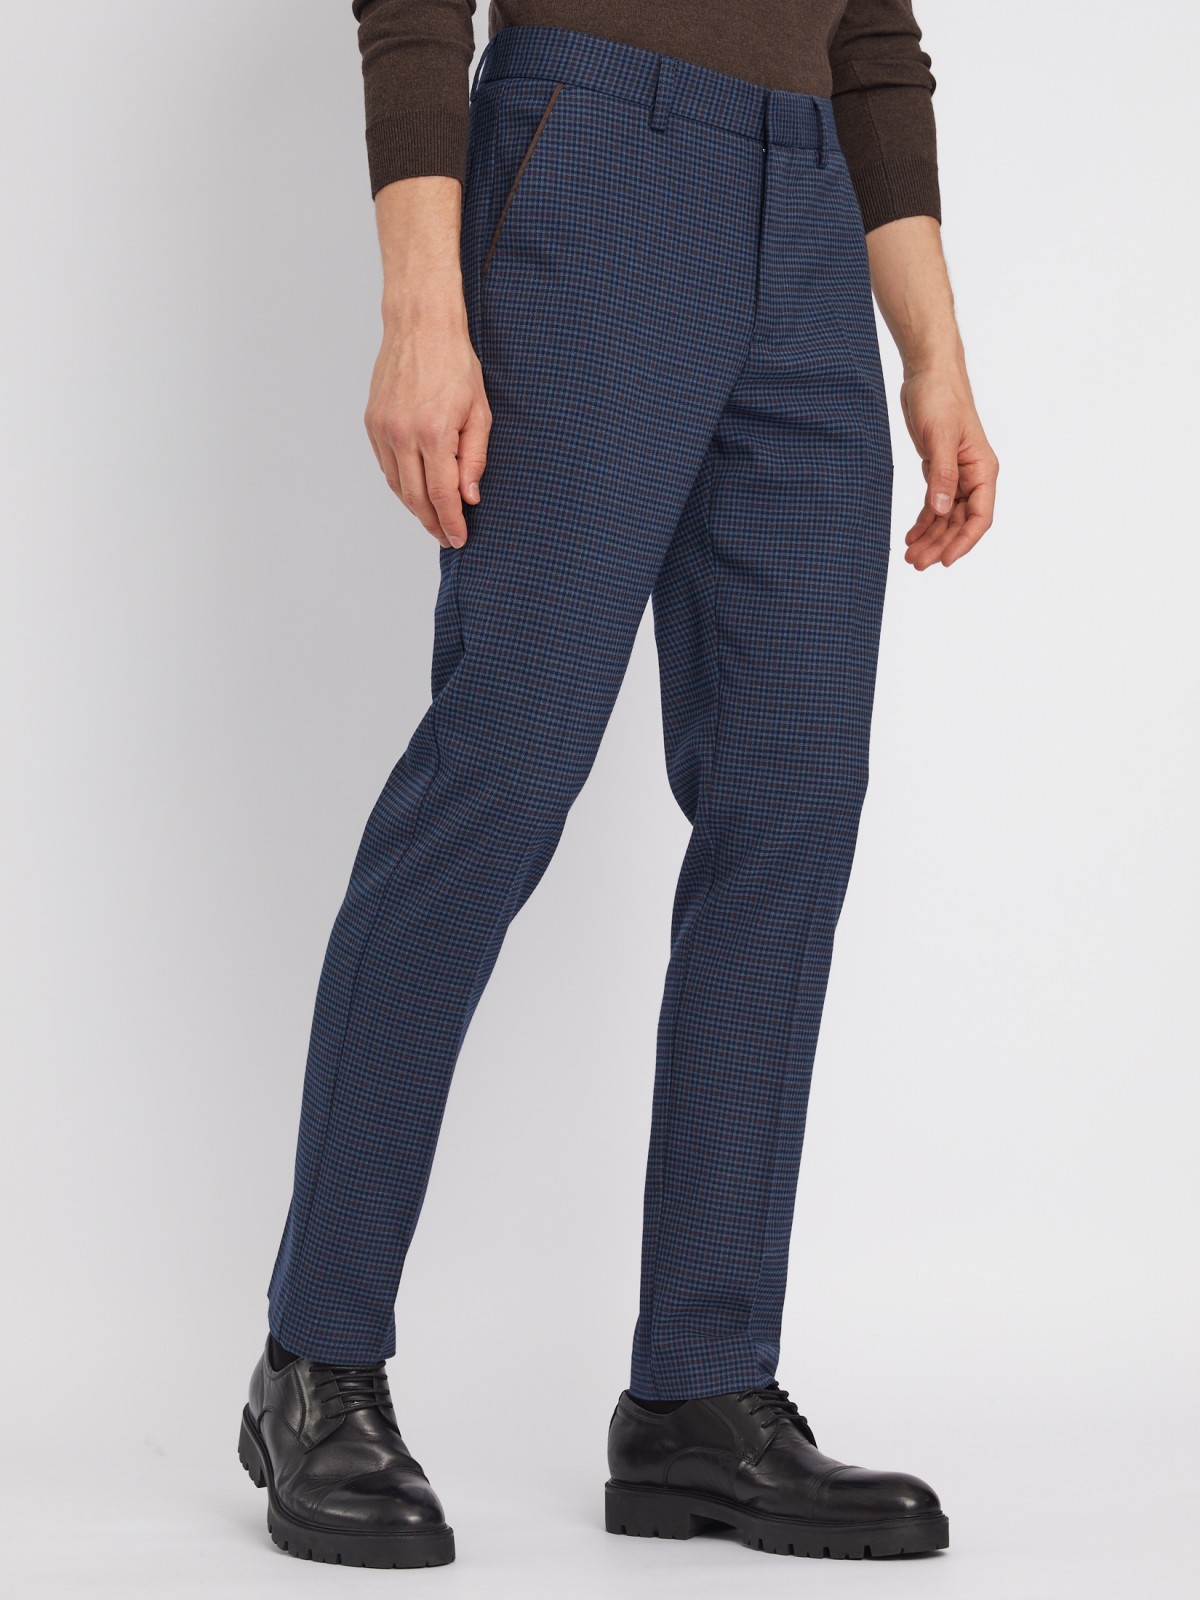 Офисные брюки силуэта Slim со стрелками и узором в клетку zolla 012337366033, цвет голубой, размер 34 - фото 3